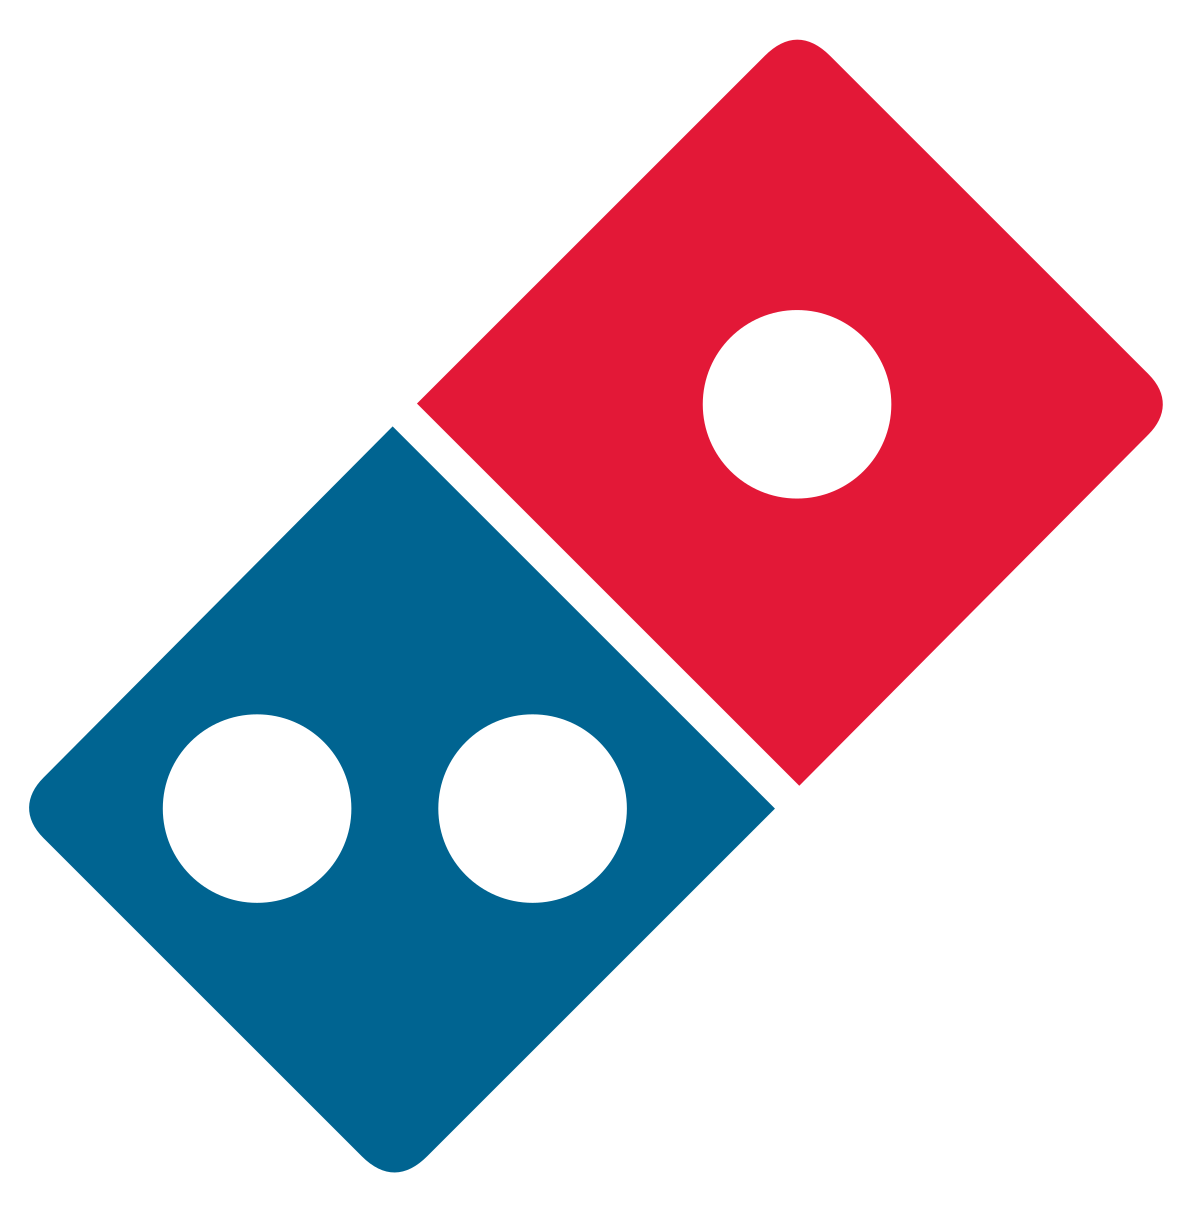 Dominos Pizza   Wikipedia